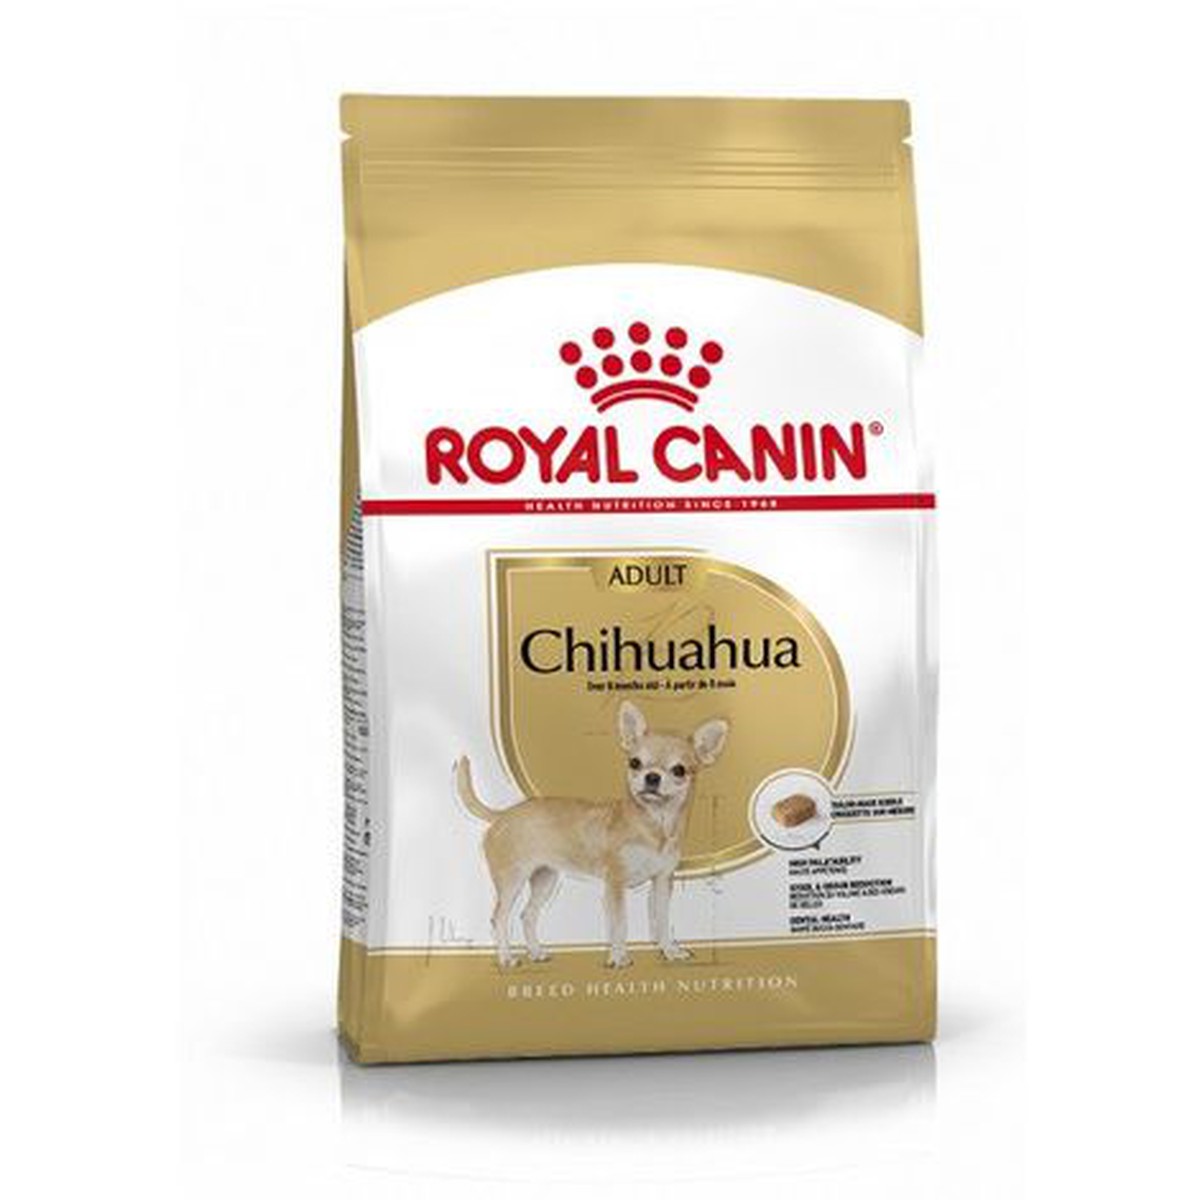 Royal Canin  Chihuahua 500 g  500 g